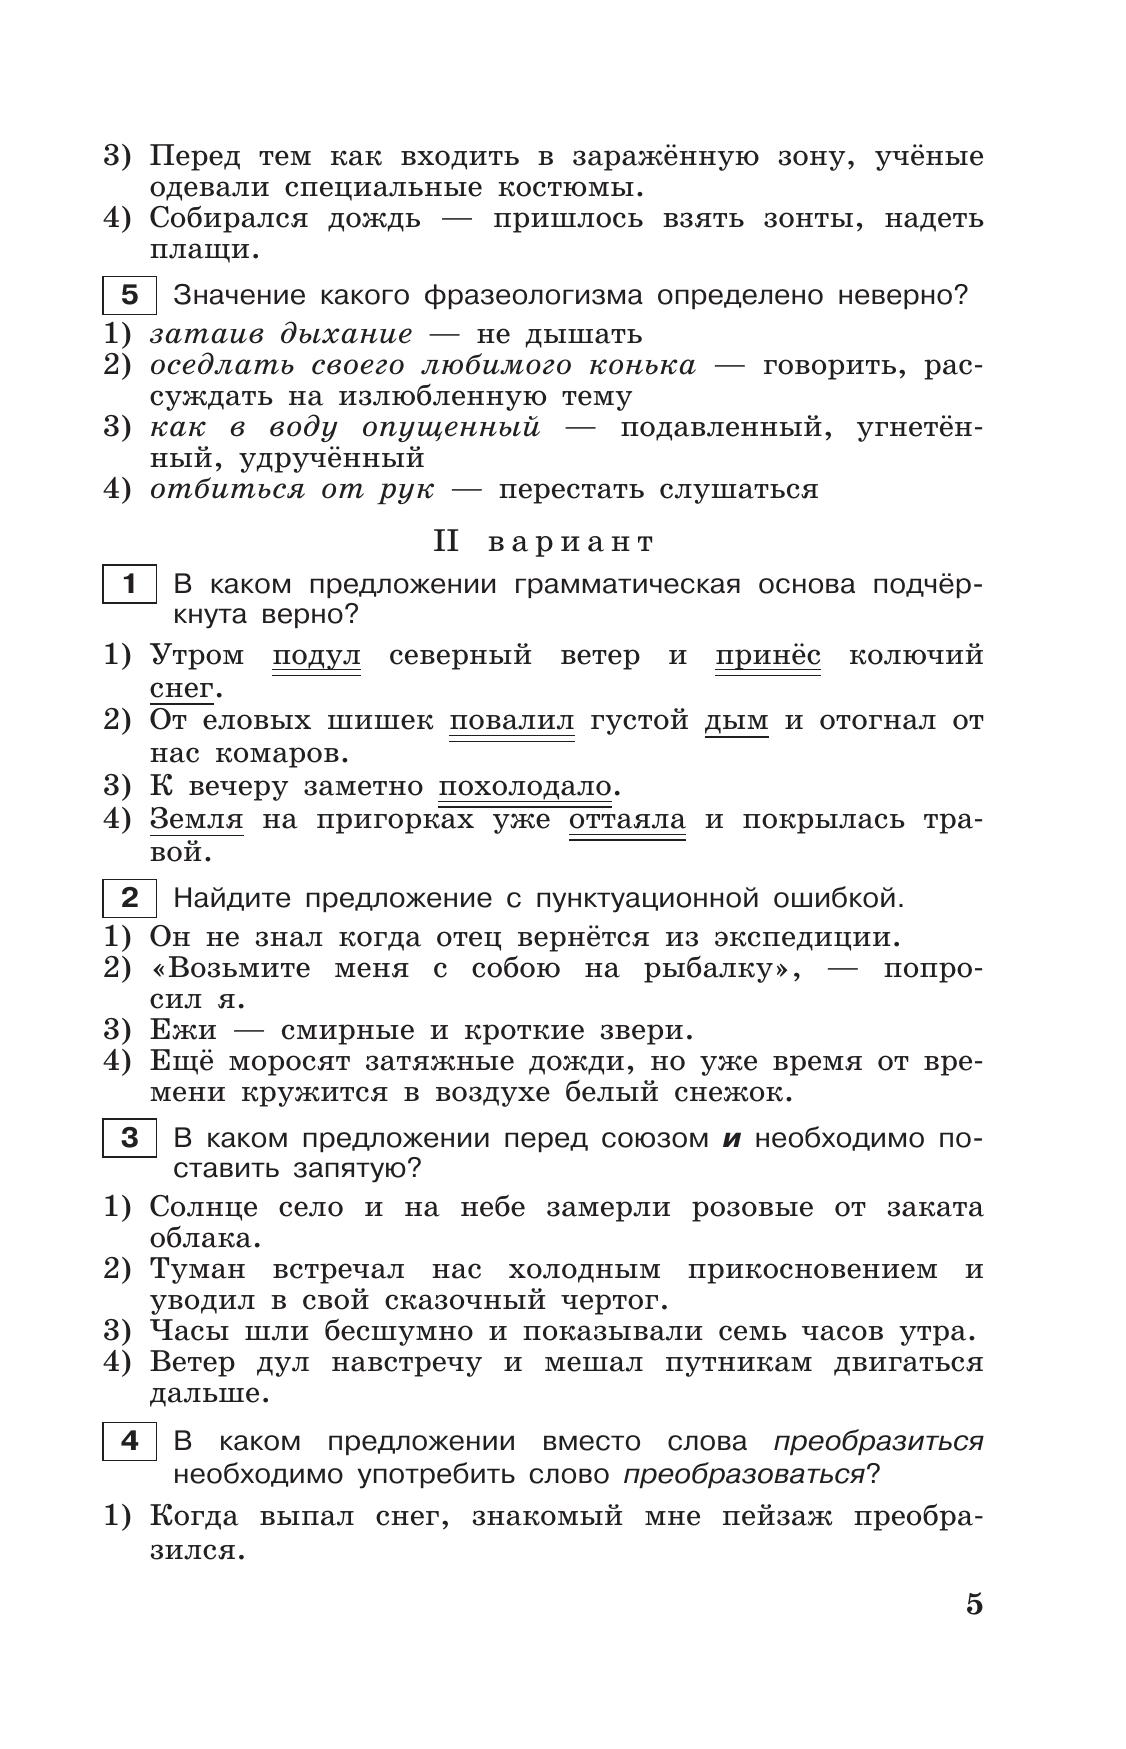 Тестовые задания по русскому языку. 7 класс. 6